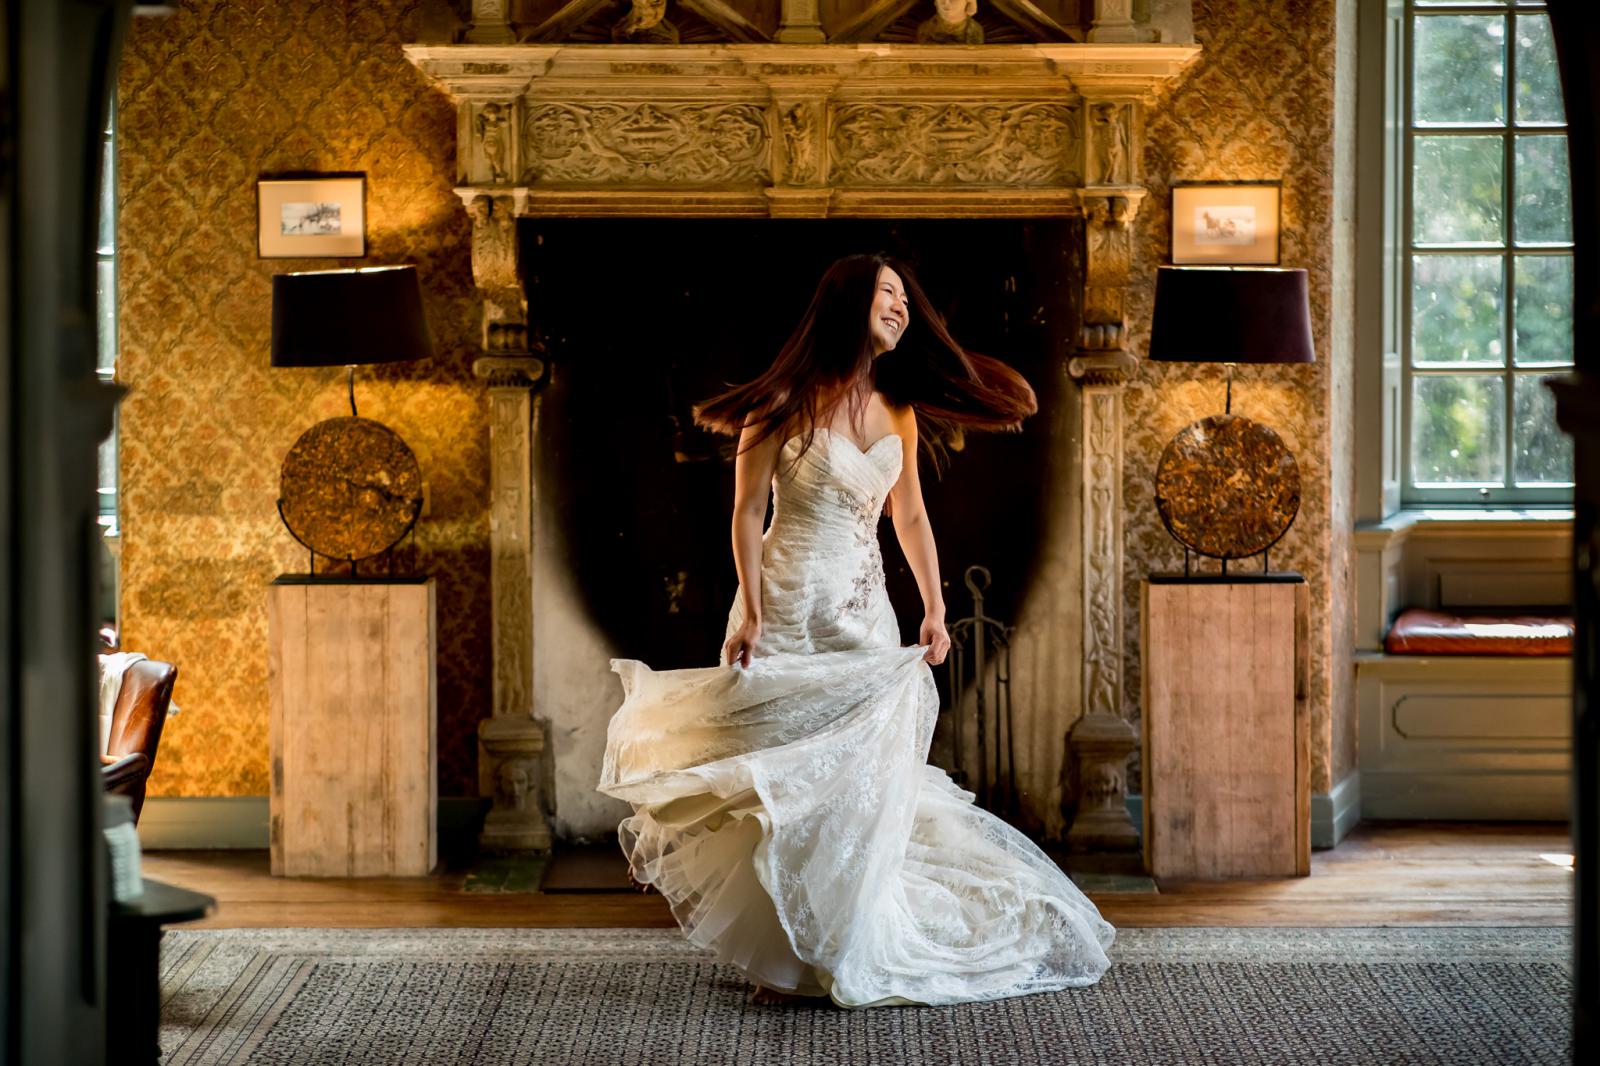 Blije bruid met haar trouwjurk in kasteel wijenburg echteld